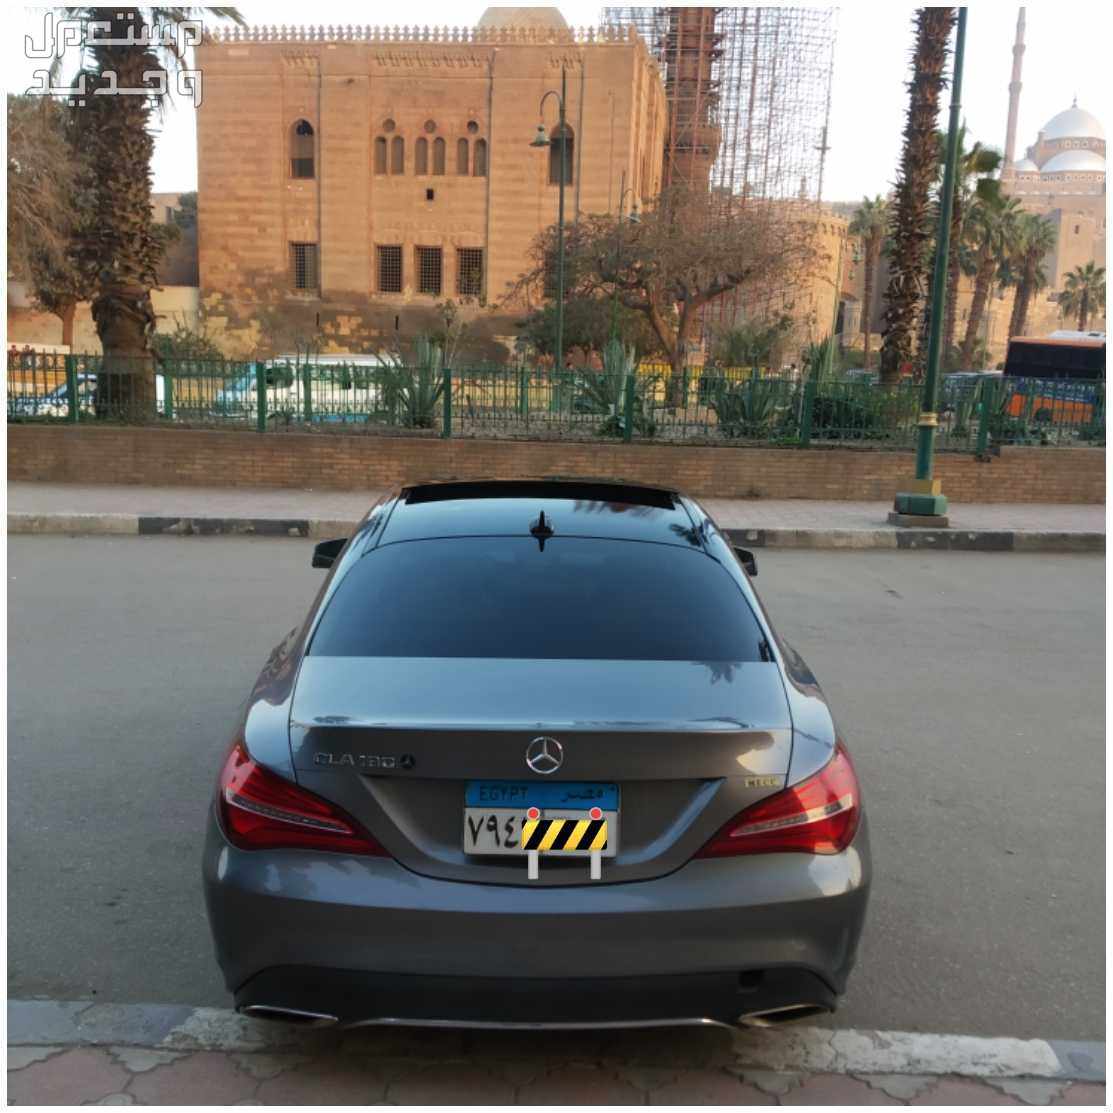 Mercedes-Benz CLA 2018 in El Sayeda Zeinab at a price of 2200000 EGP